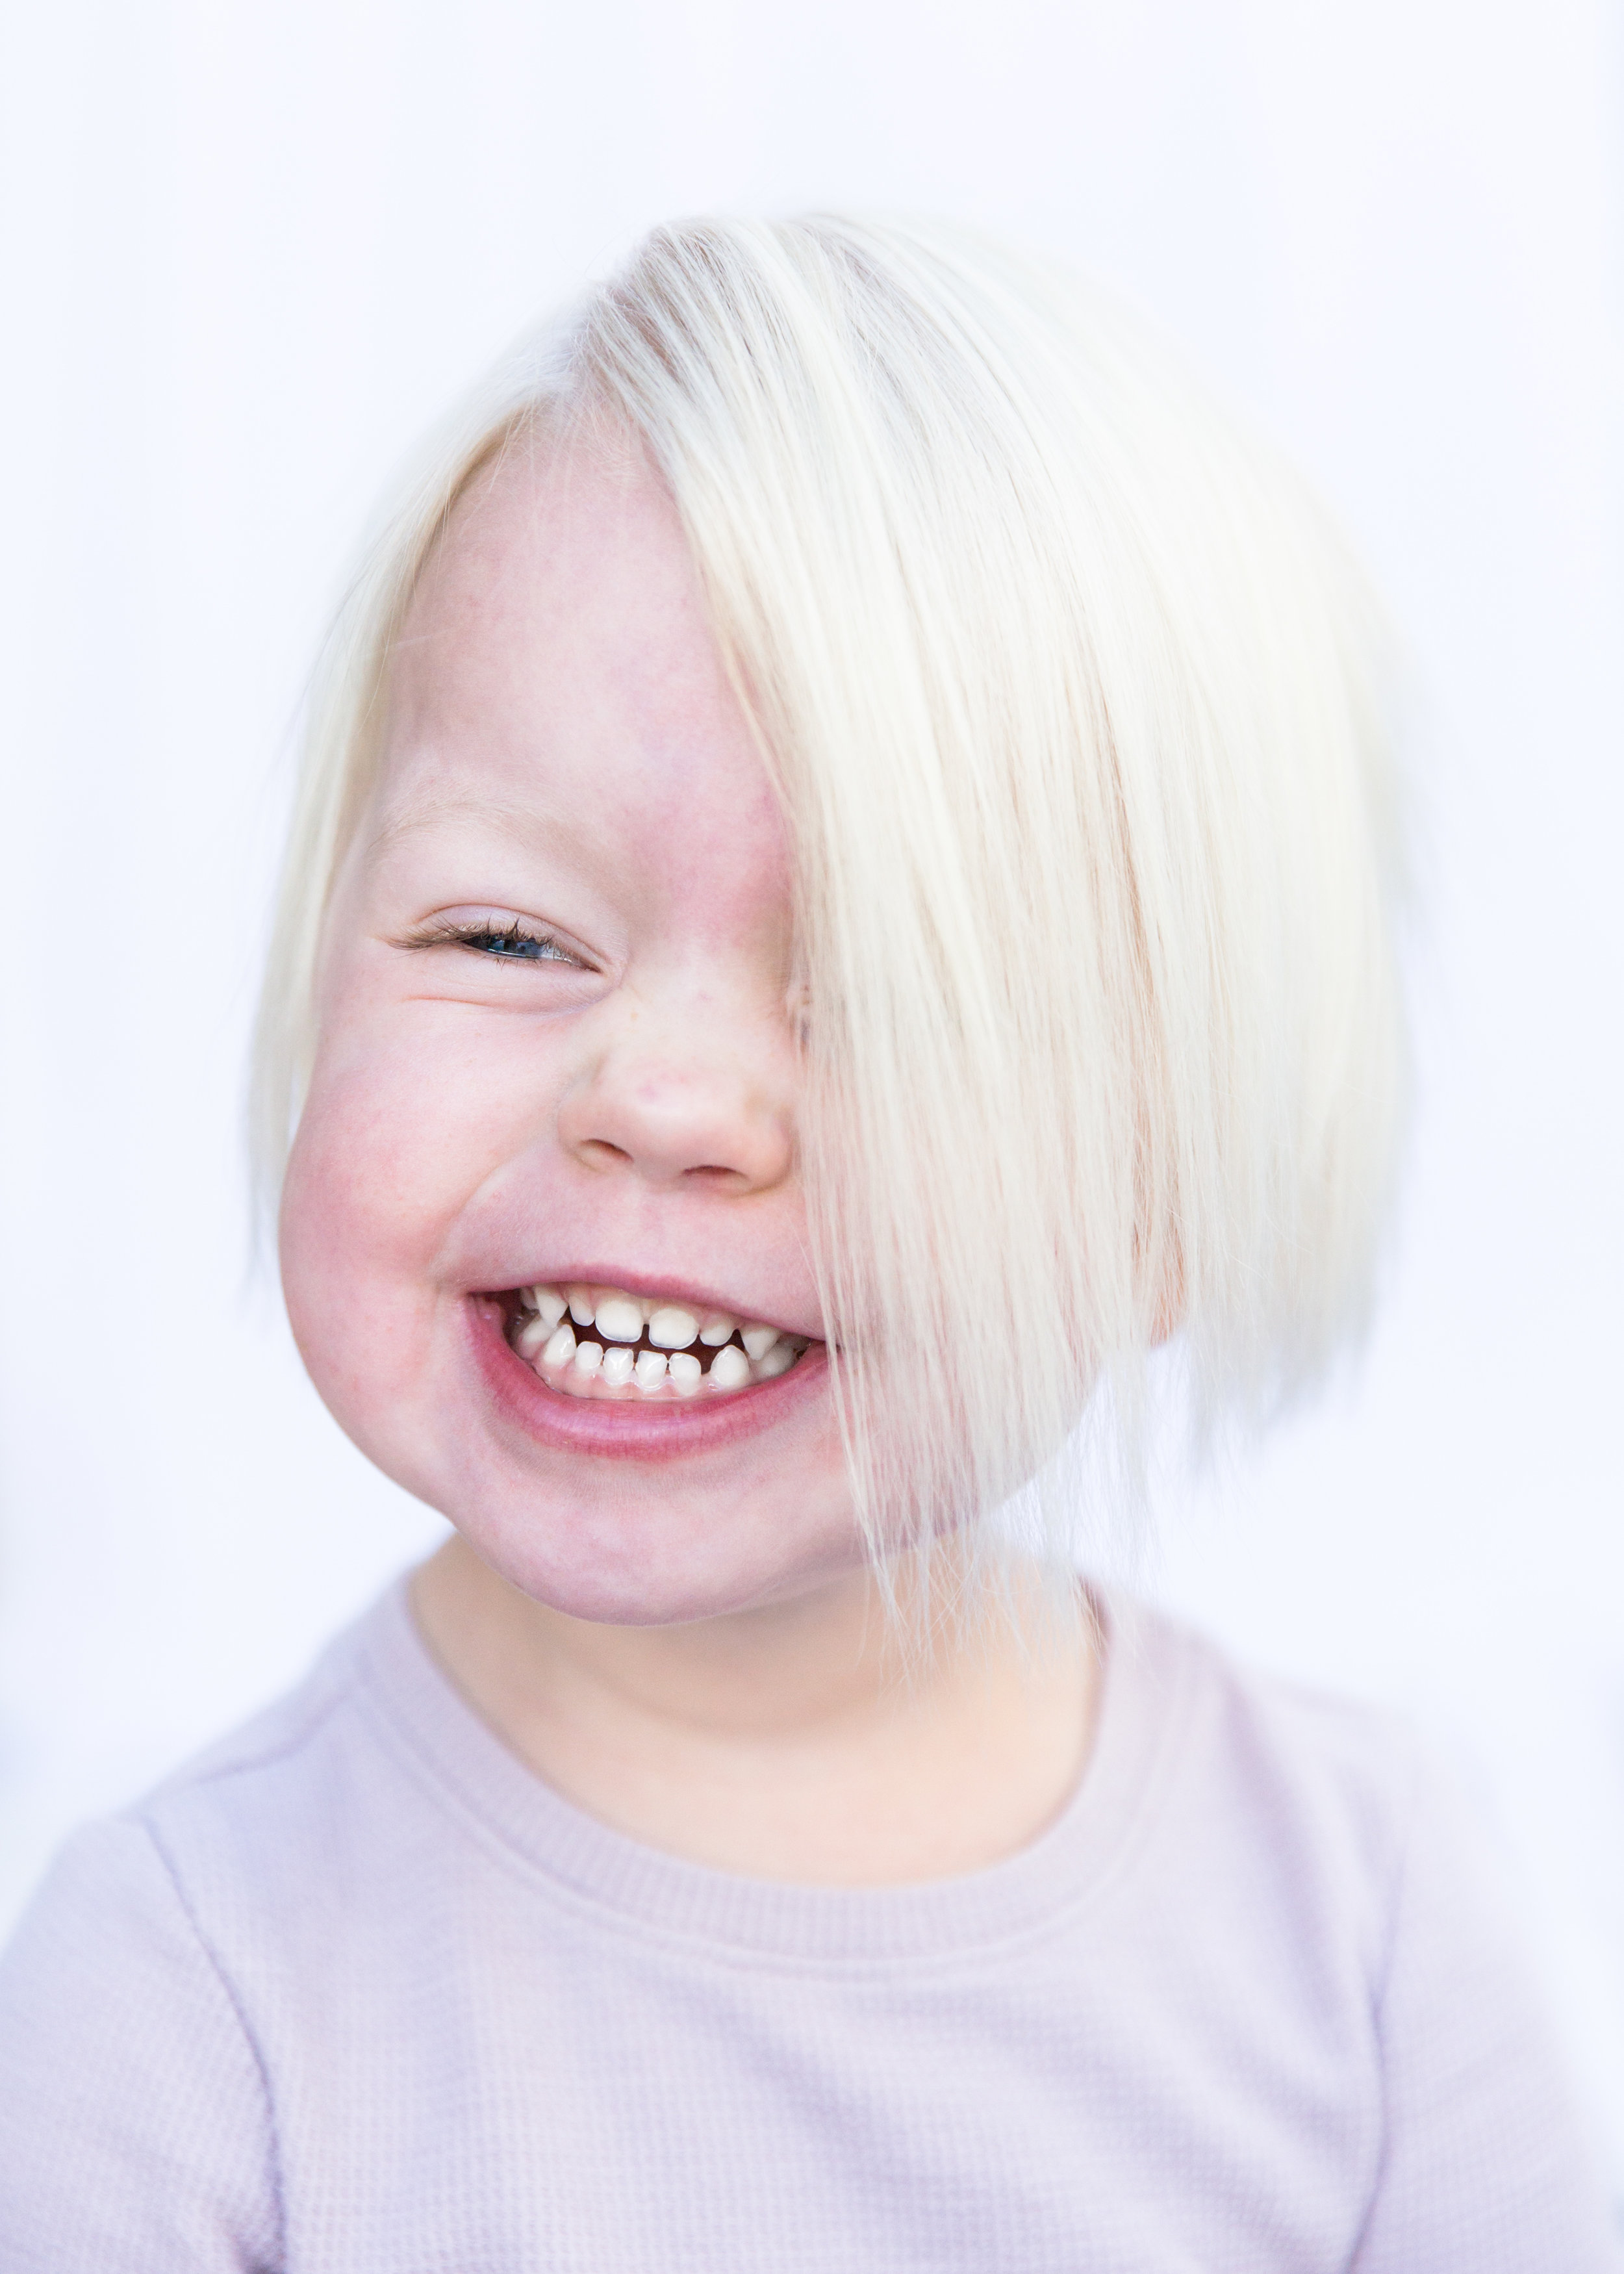 Telluride Portrait Photography - Child Portrait